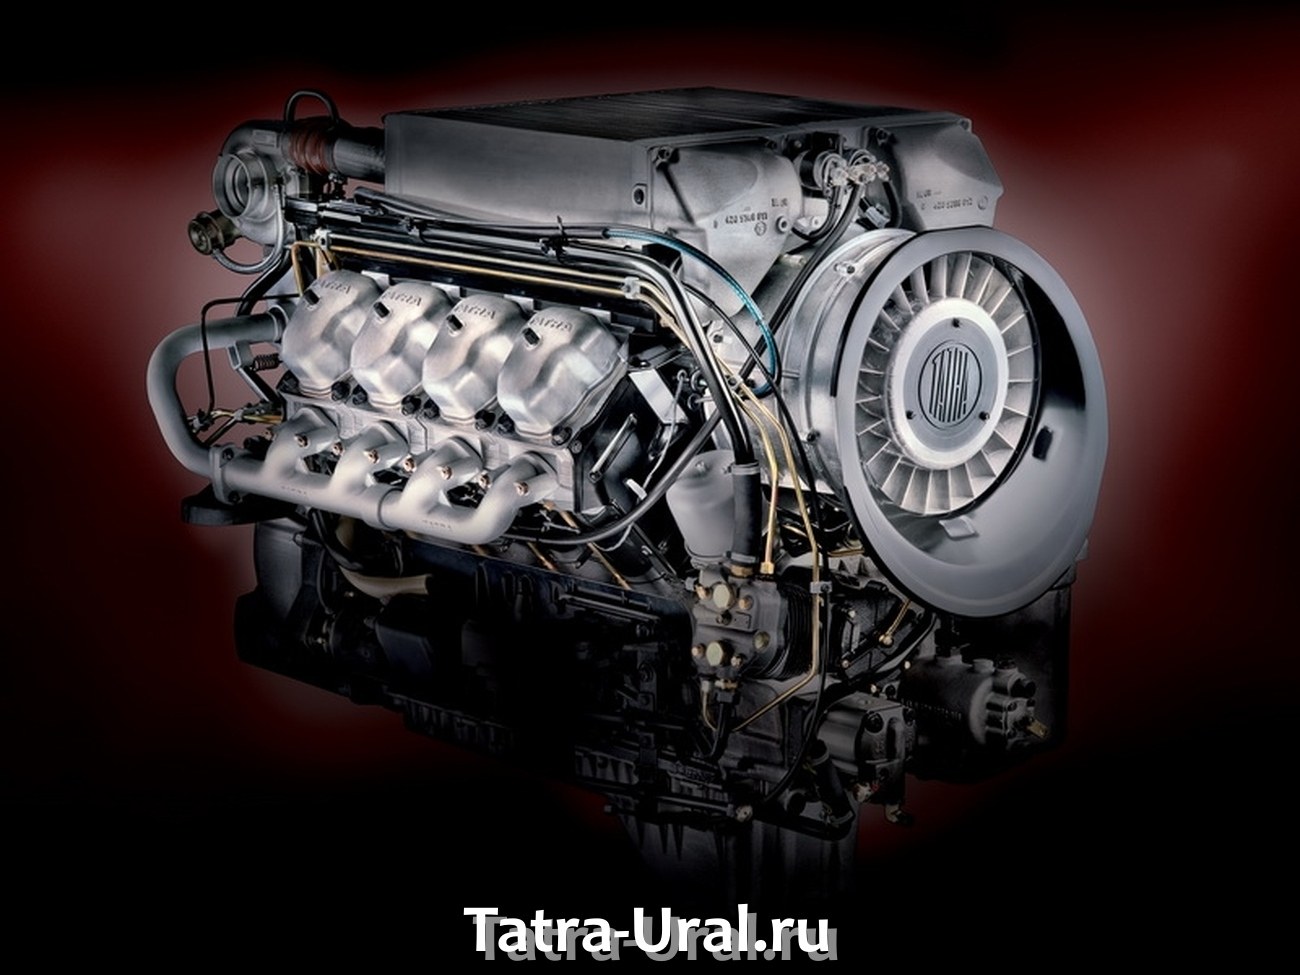 V 8.00. Двигатель Татра v8 дизель. Мотор Татра 815 v10. Двигатель Татра v8 турбо. Двигатель Татра v8 турбо 815.